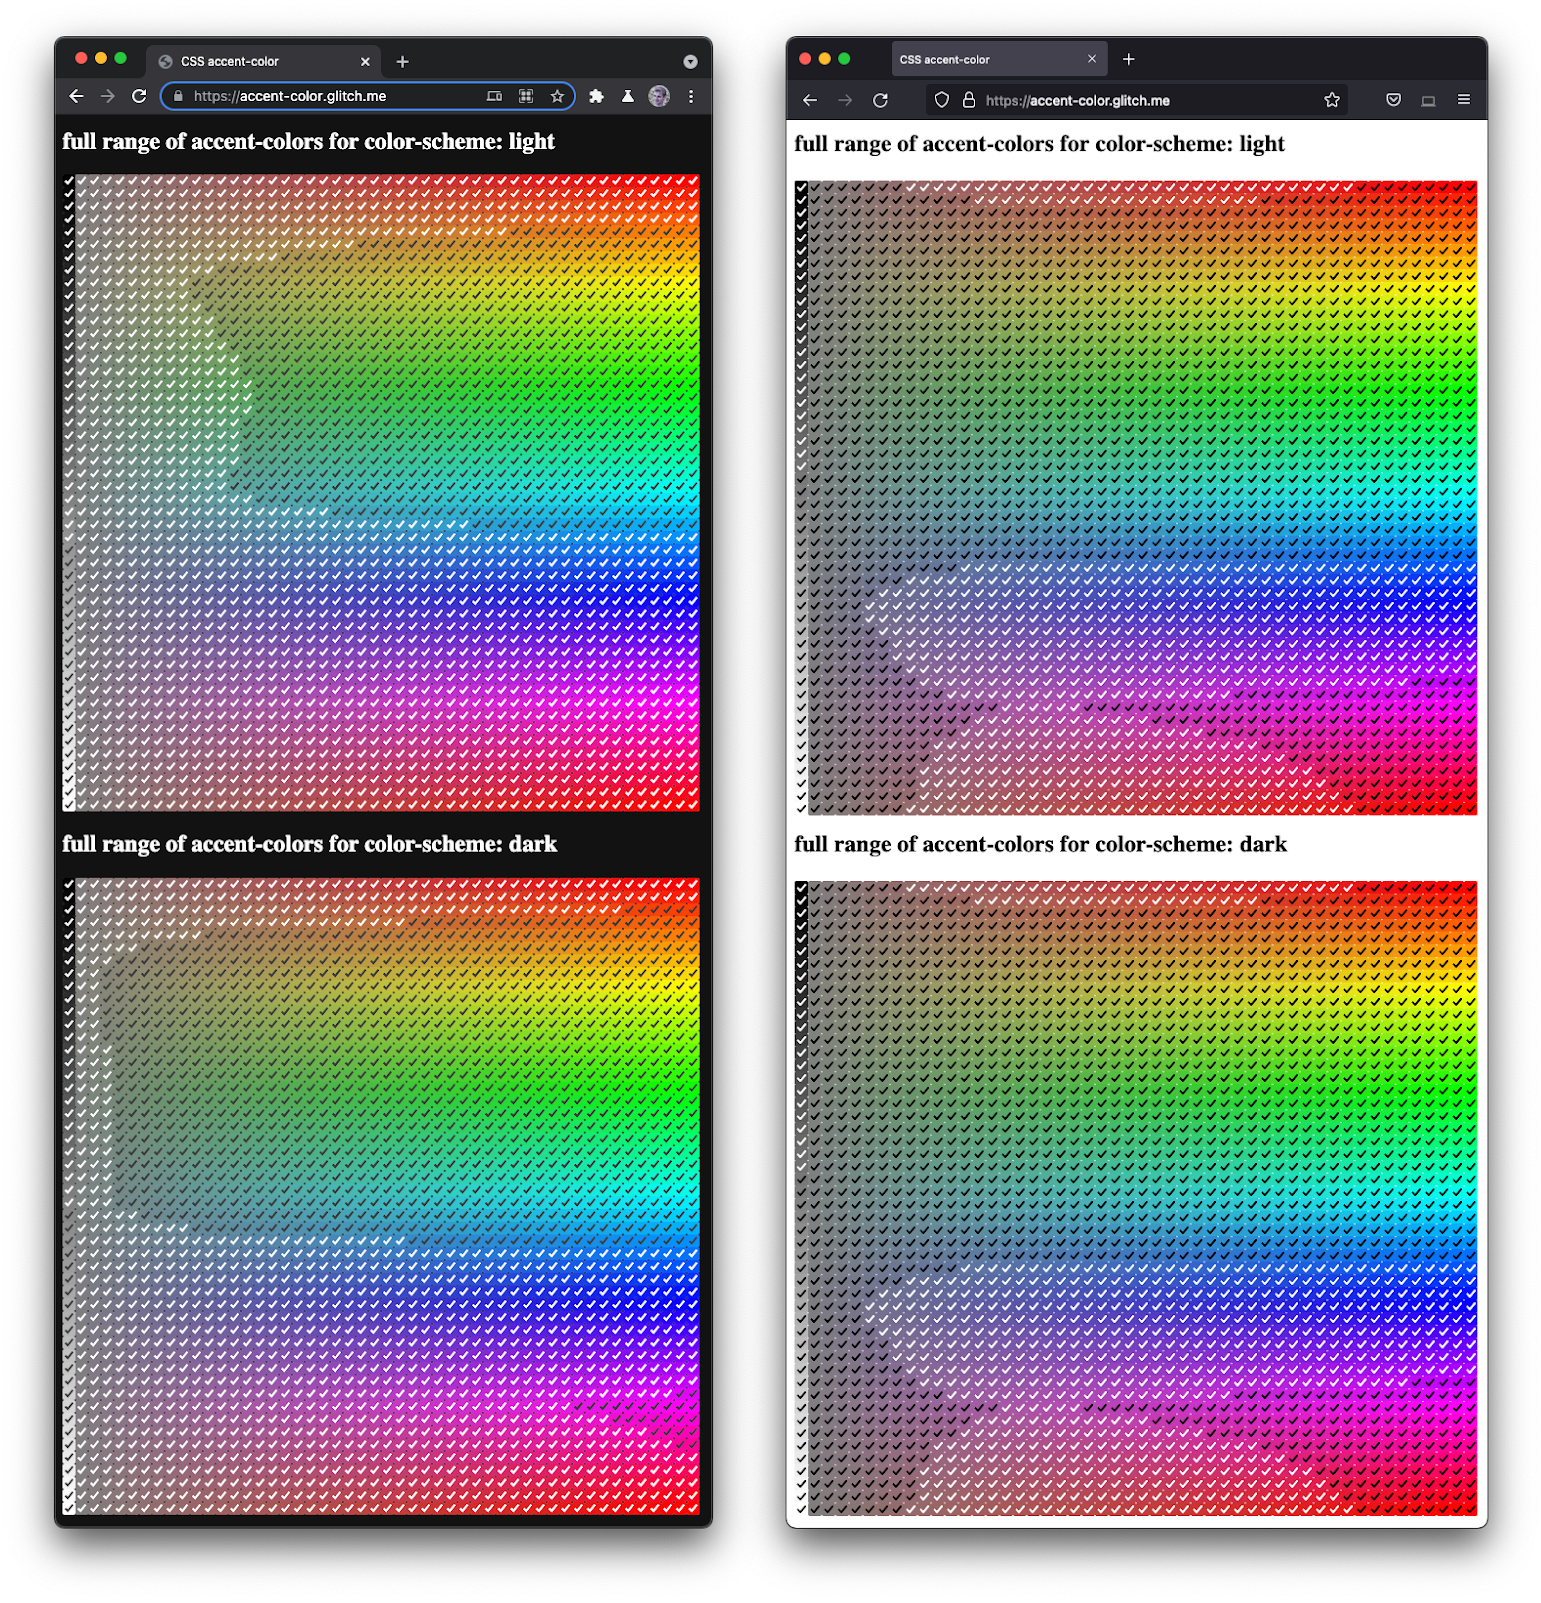 لقطة شاشة لمتصفّح Firefox وChromium جنبًا إلى جنب،
 تعرض مجموعة كاملة من مربّعات الاختيار بدرجات ألوان وظلام مختلفة.